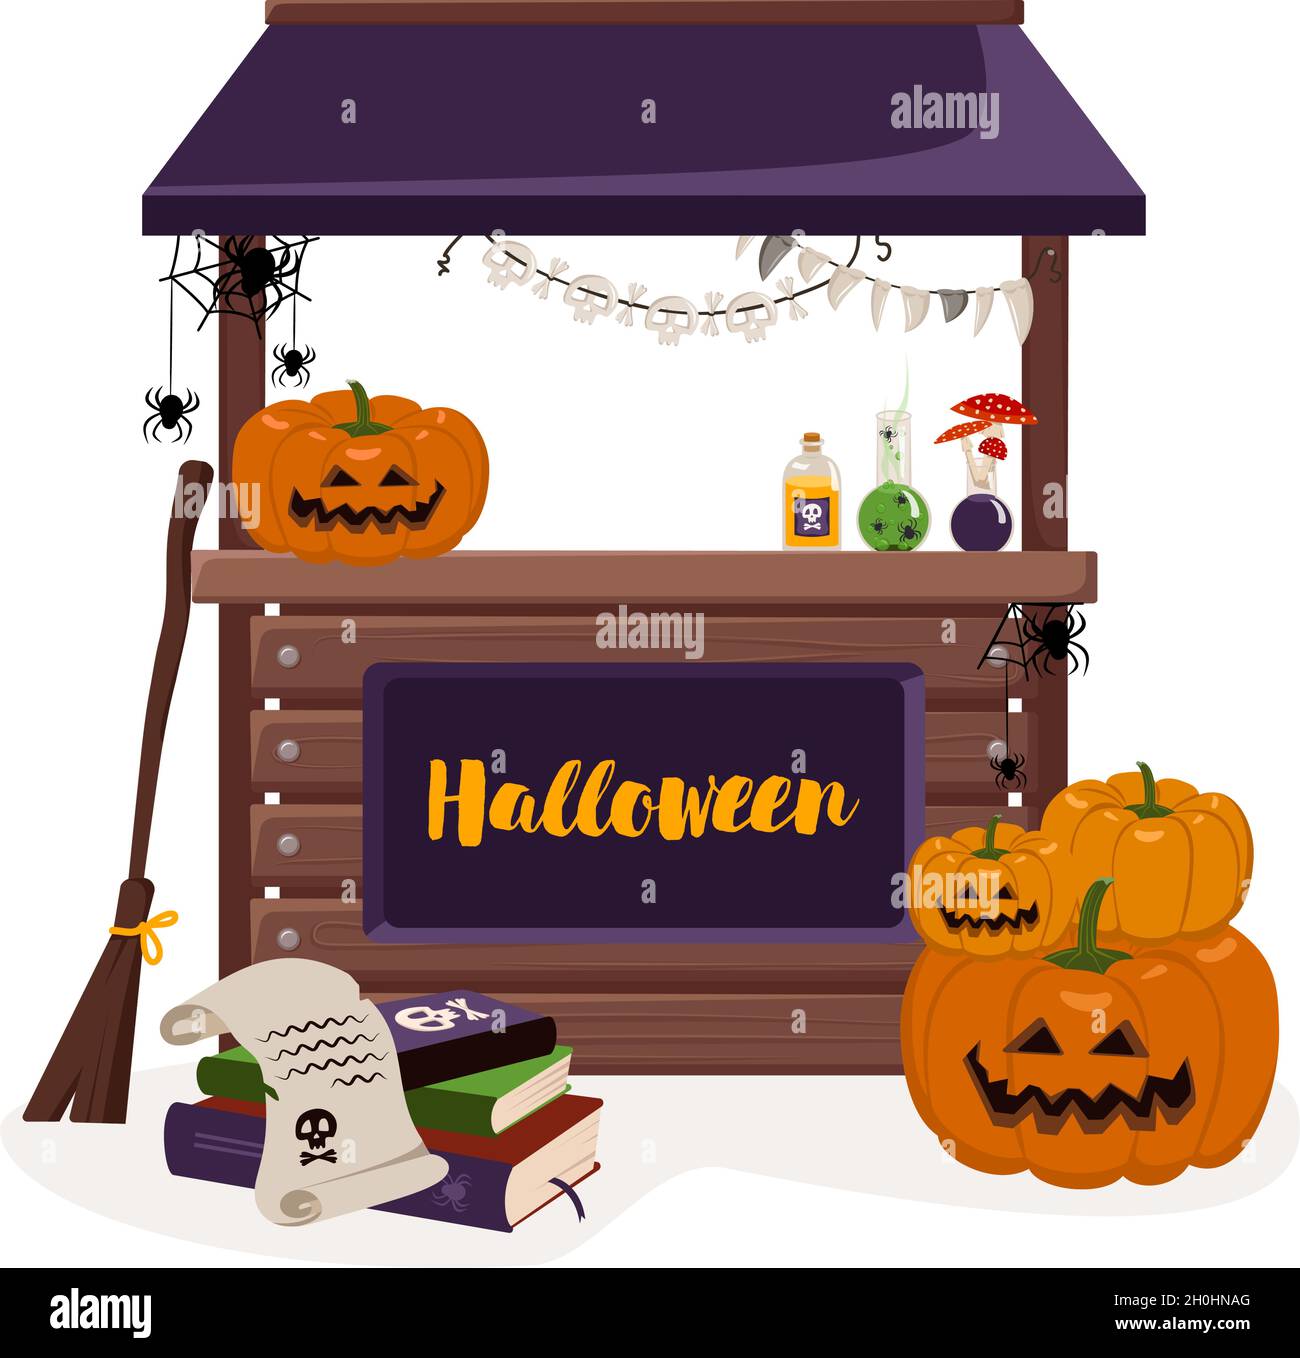 Stand Zähler für Herbst Halloween Urlaub mit Laternen, Kürbisse, Bücher, und Hexen Artikel. Festliche Dekoration mit Horror-Elementen Stock Vektor